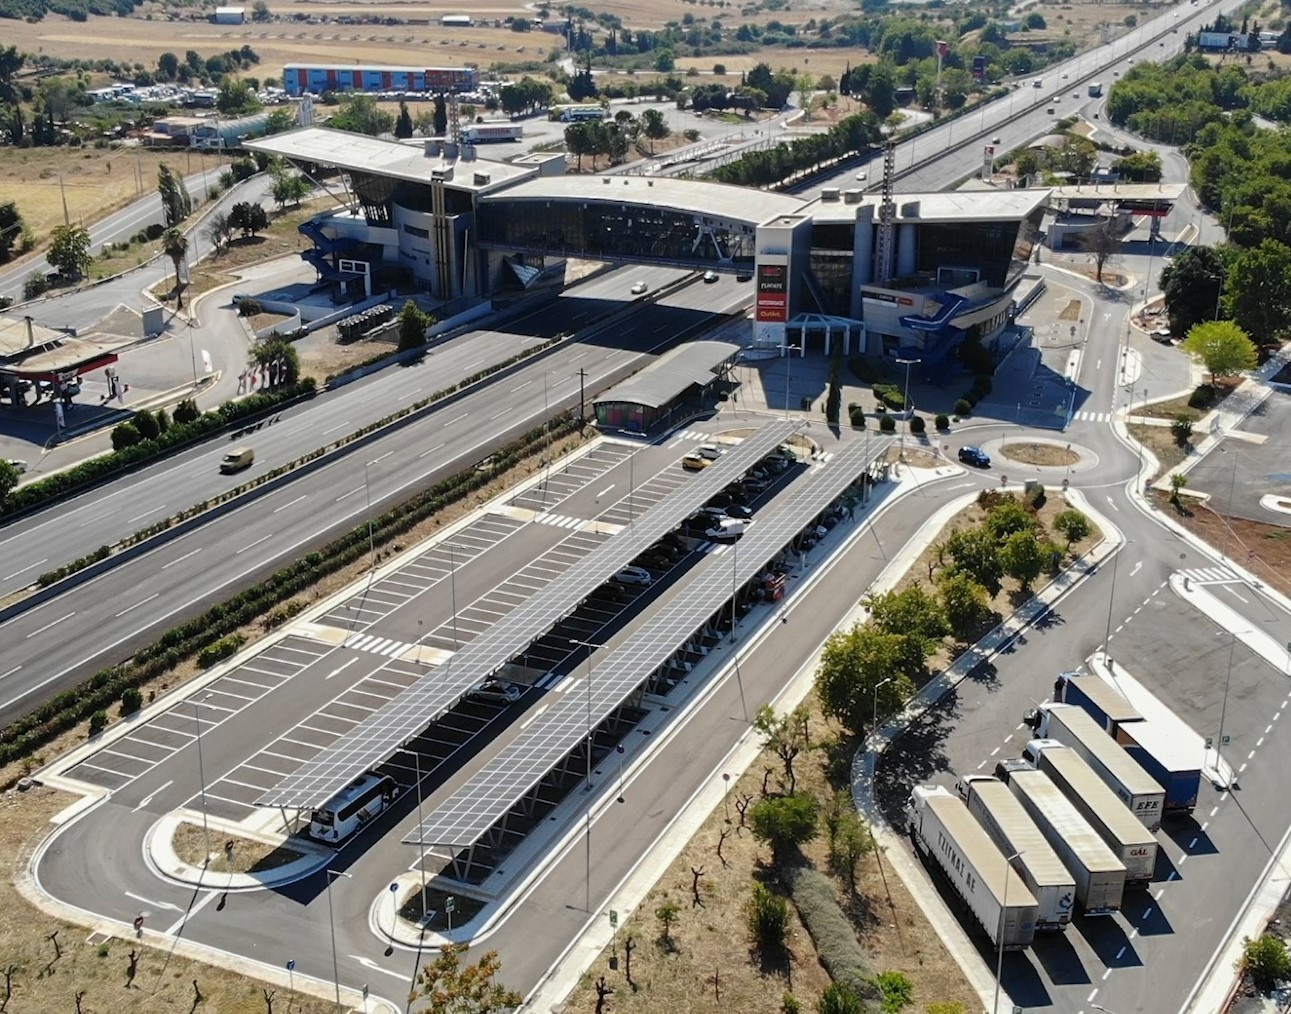 ΓΕΚ ΤΕΡΝΑ: Στο Σείριο ο πρώτος υβριδικός σταθμός ηλεκτρικής φόρτισης με χρήση ηλιακής ενέργειας  